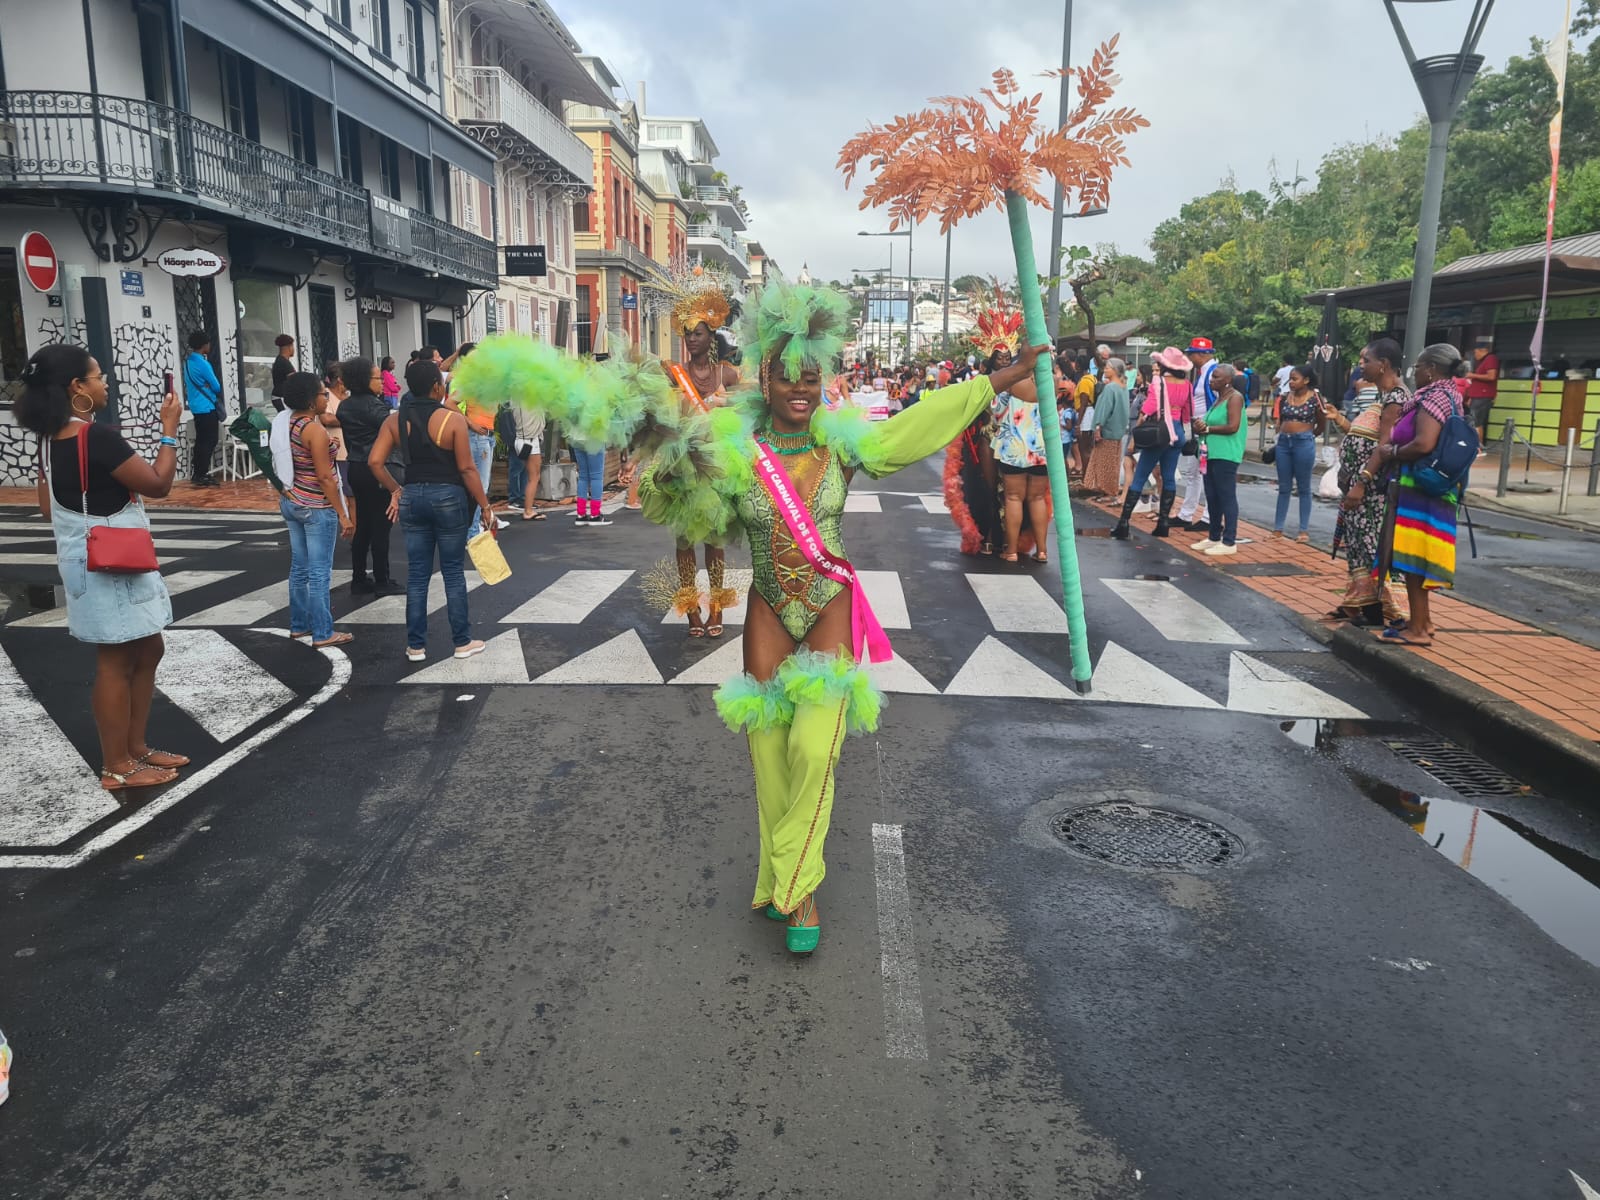     [En images] Retour sur la parade des reines et mini-reines du carnaval

